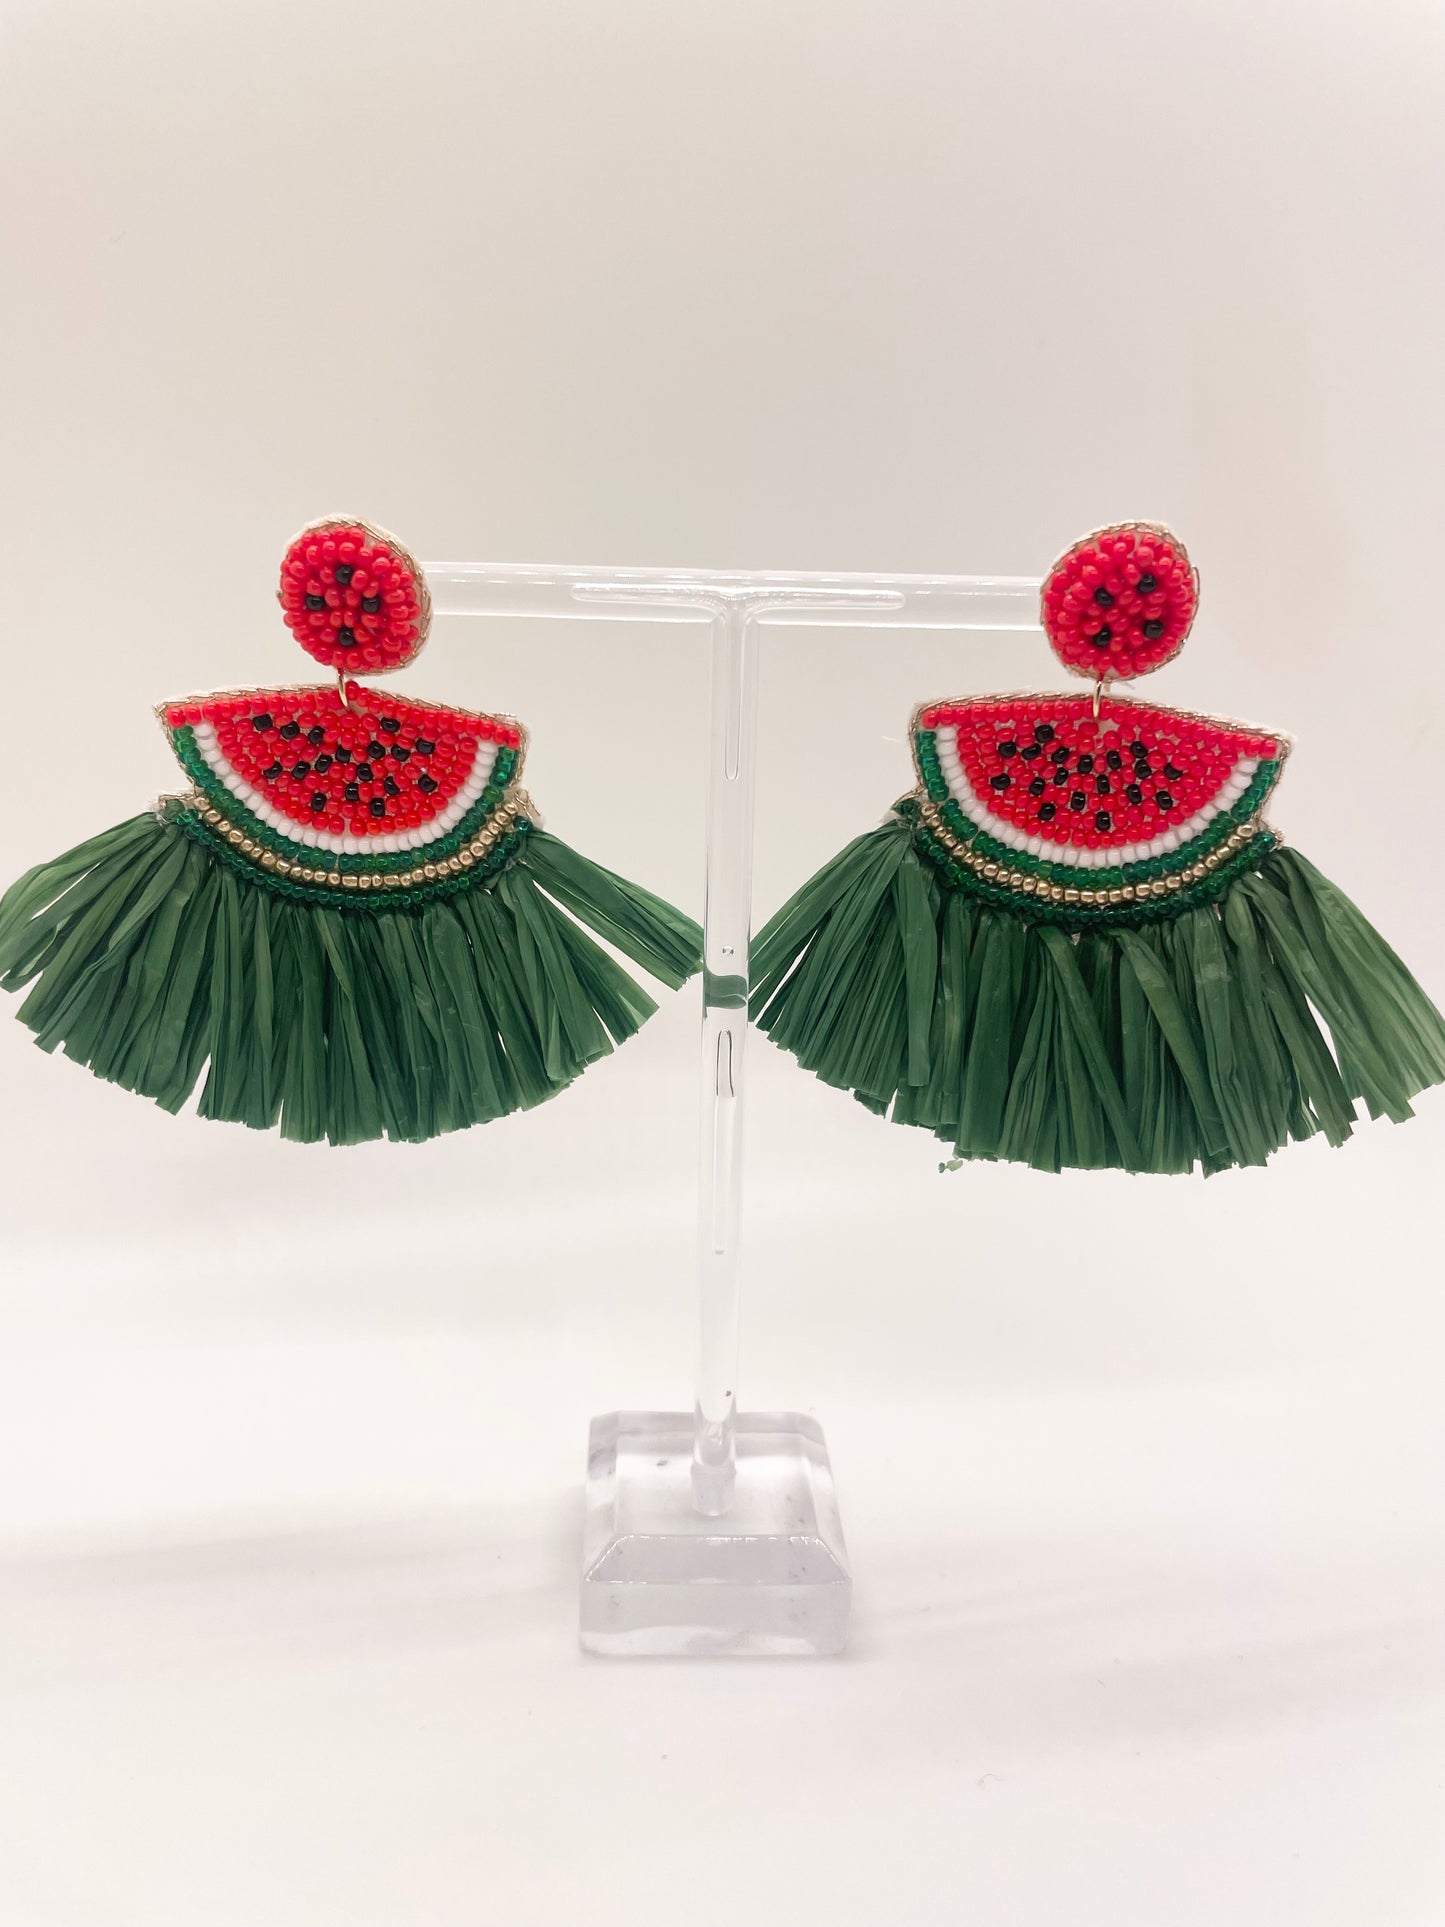 Watermelon Grass Skirt Earrings